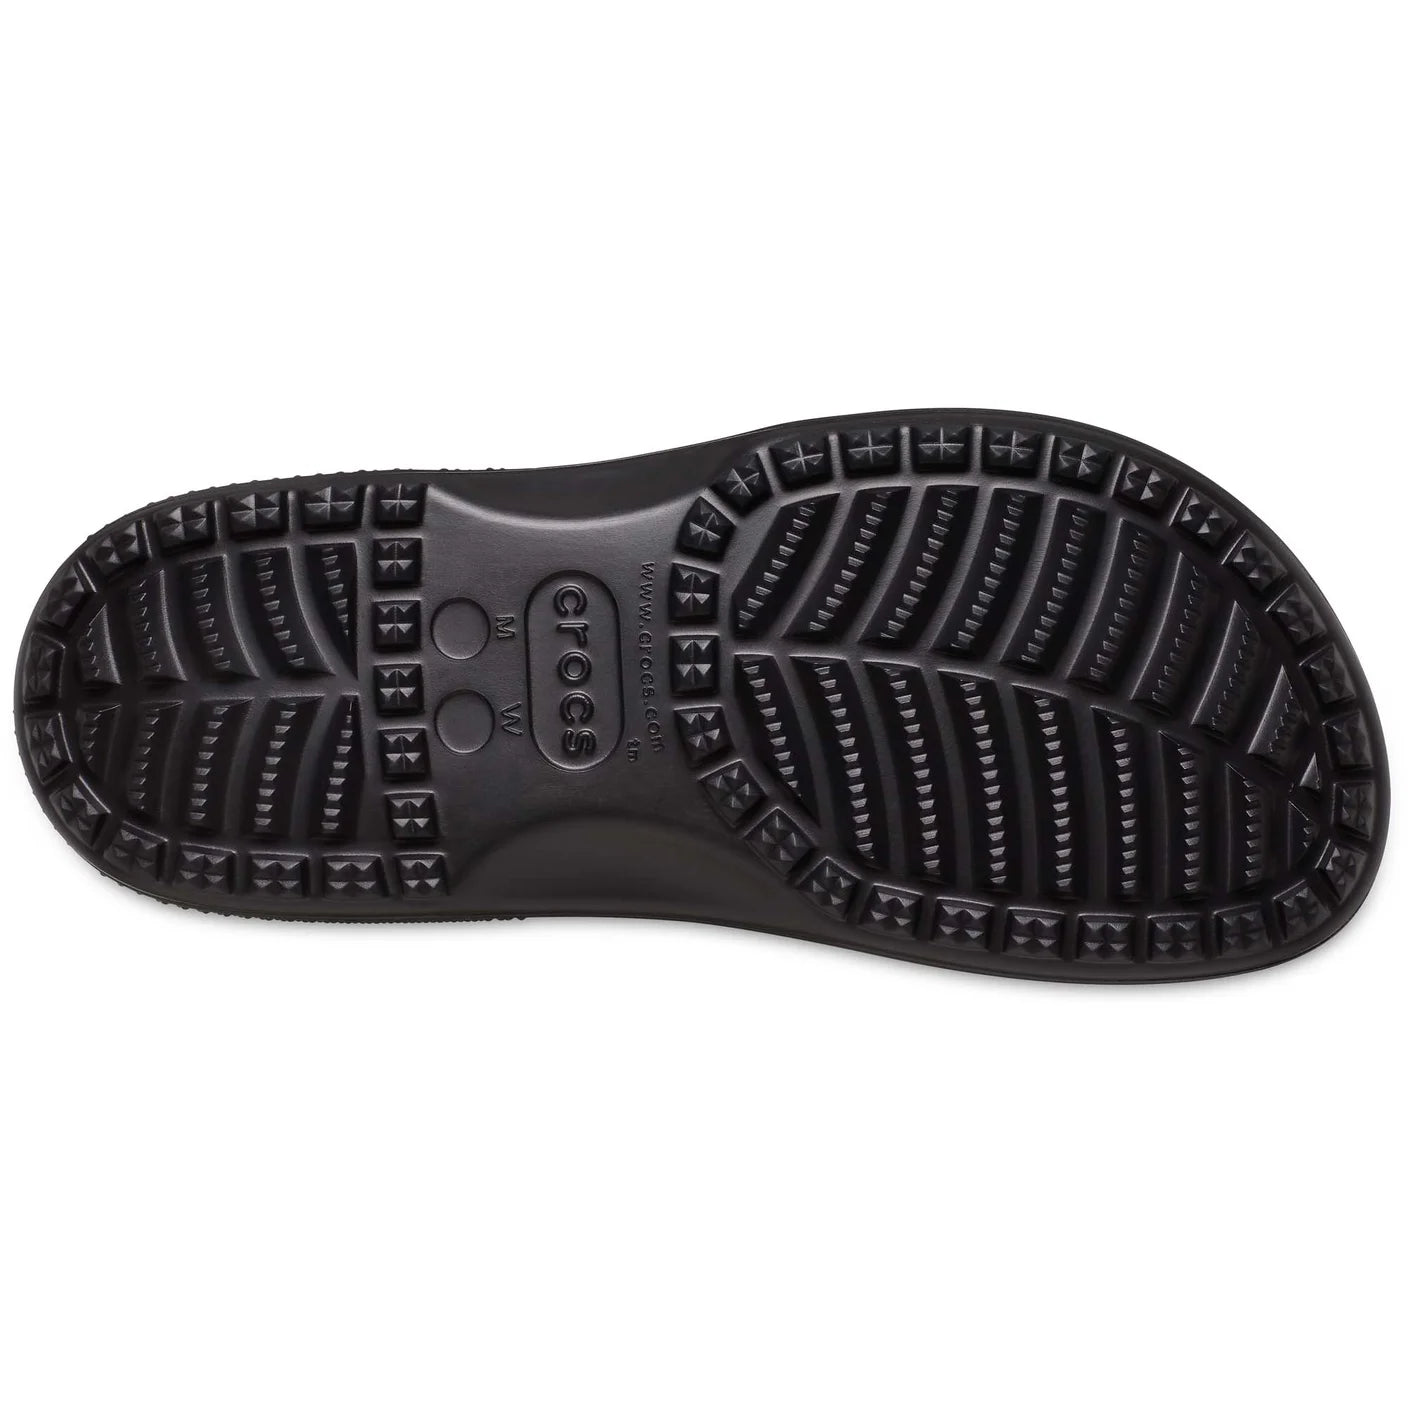 Classic Boot - shoe&amp;me - Crocs - Boot - Boots, Crocs, Unisex